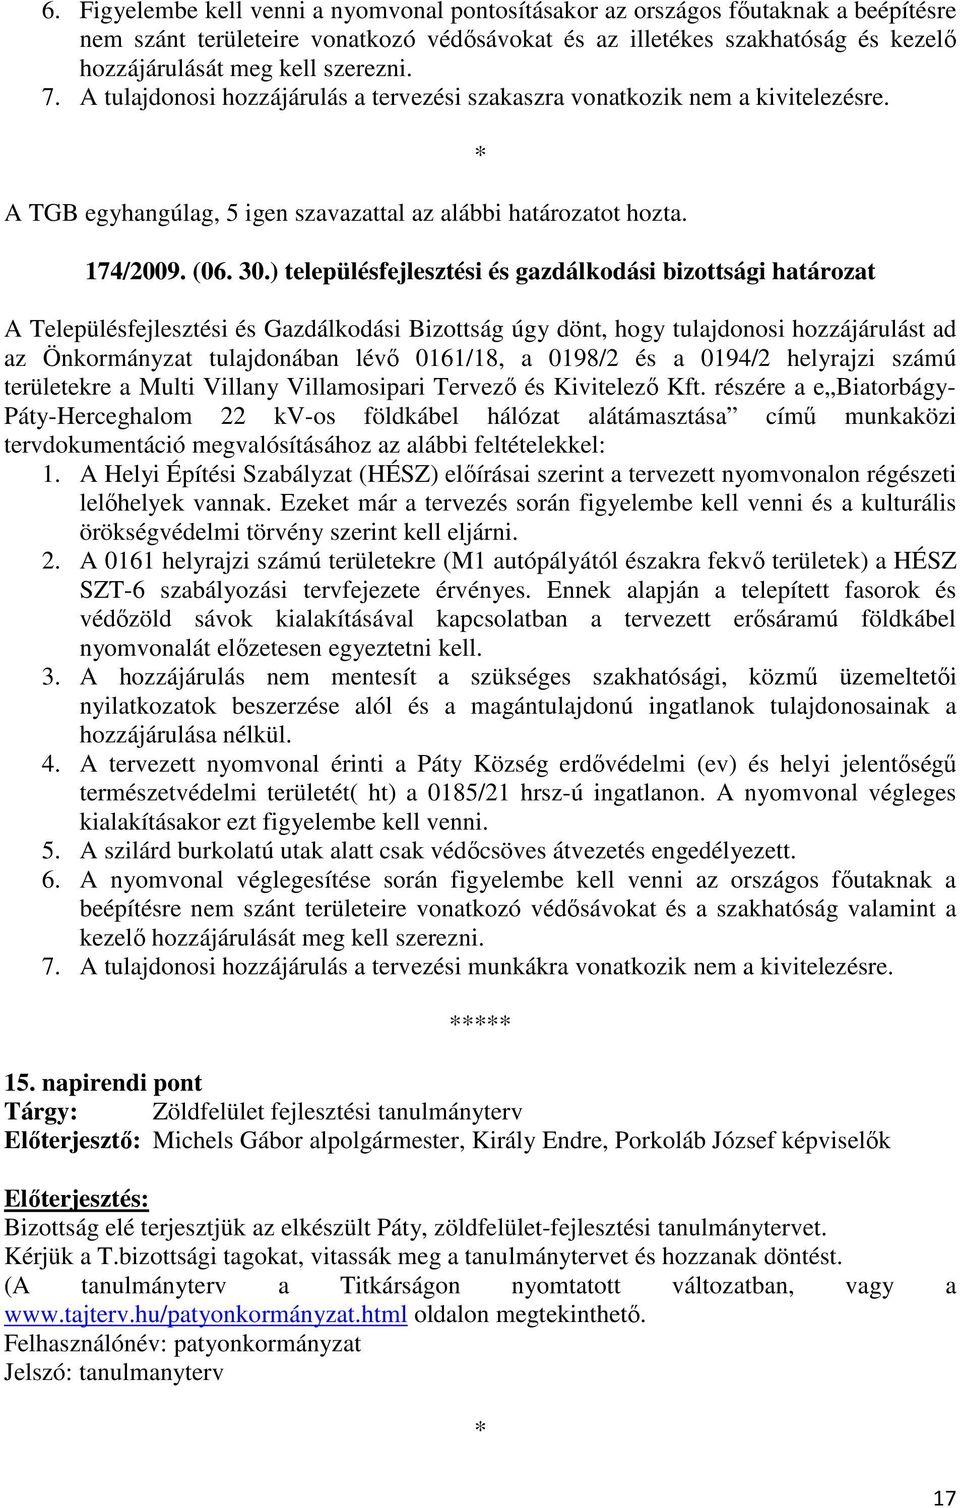 ) településfejlesztési és gazdálkodási bizottsági határozat A Településfejlesztési és Gazdálkodási Bizottság úgy dönt, hogy tulajdonosi hozzájárulást ad az Önkormányzat tulajdonában lévı 0161/18, a